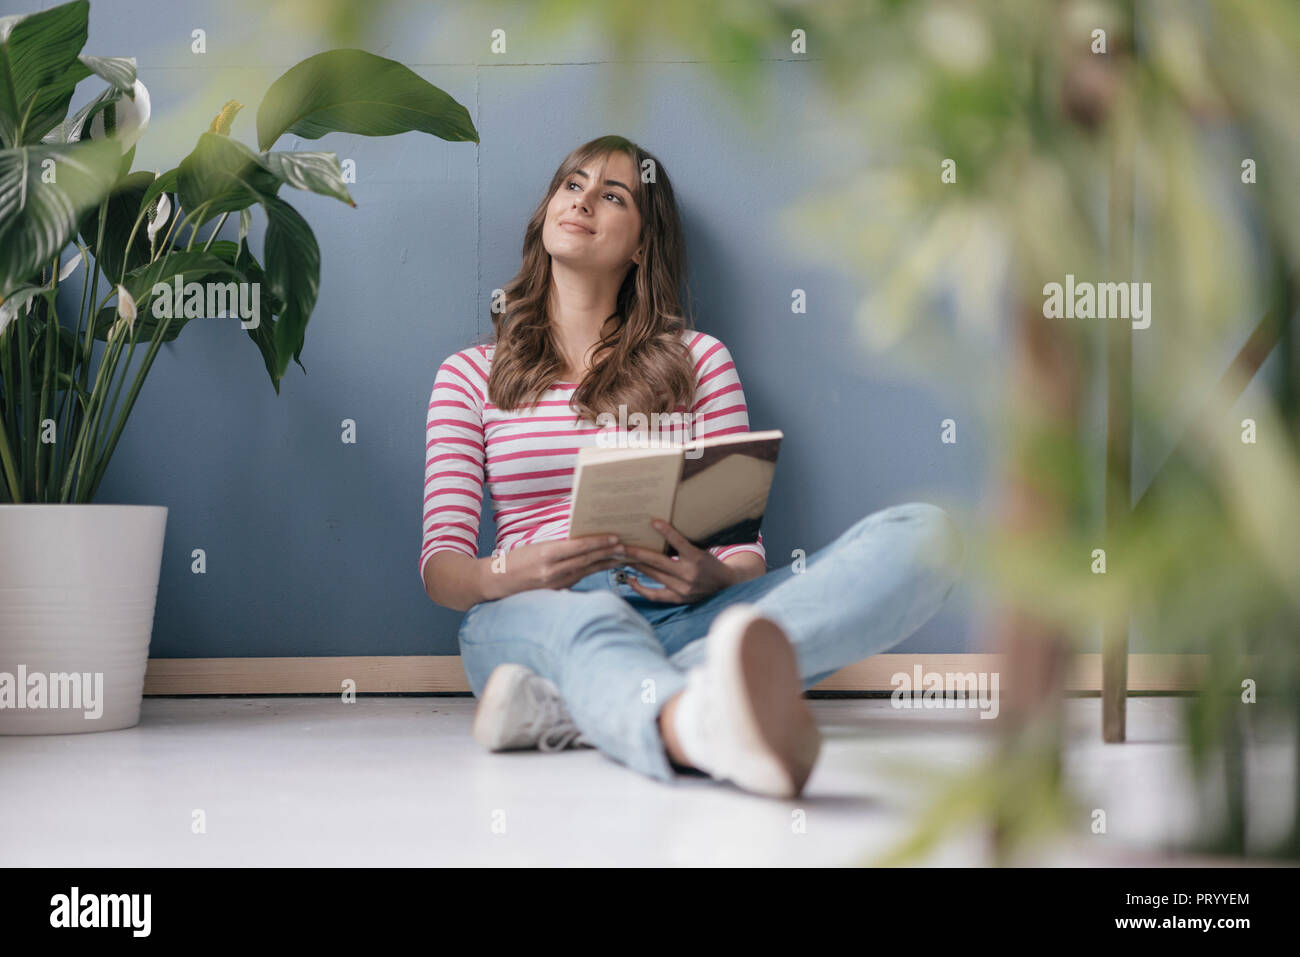 Mujer sentada en el suelo en su nueva casa, leer un libro, rodeado de plantas Foto de stock